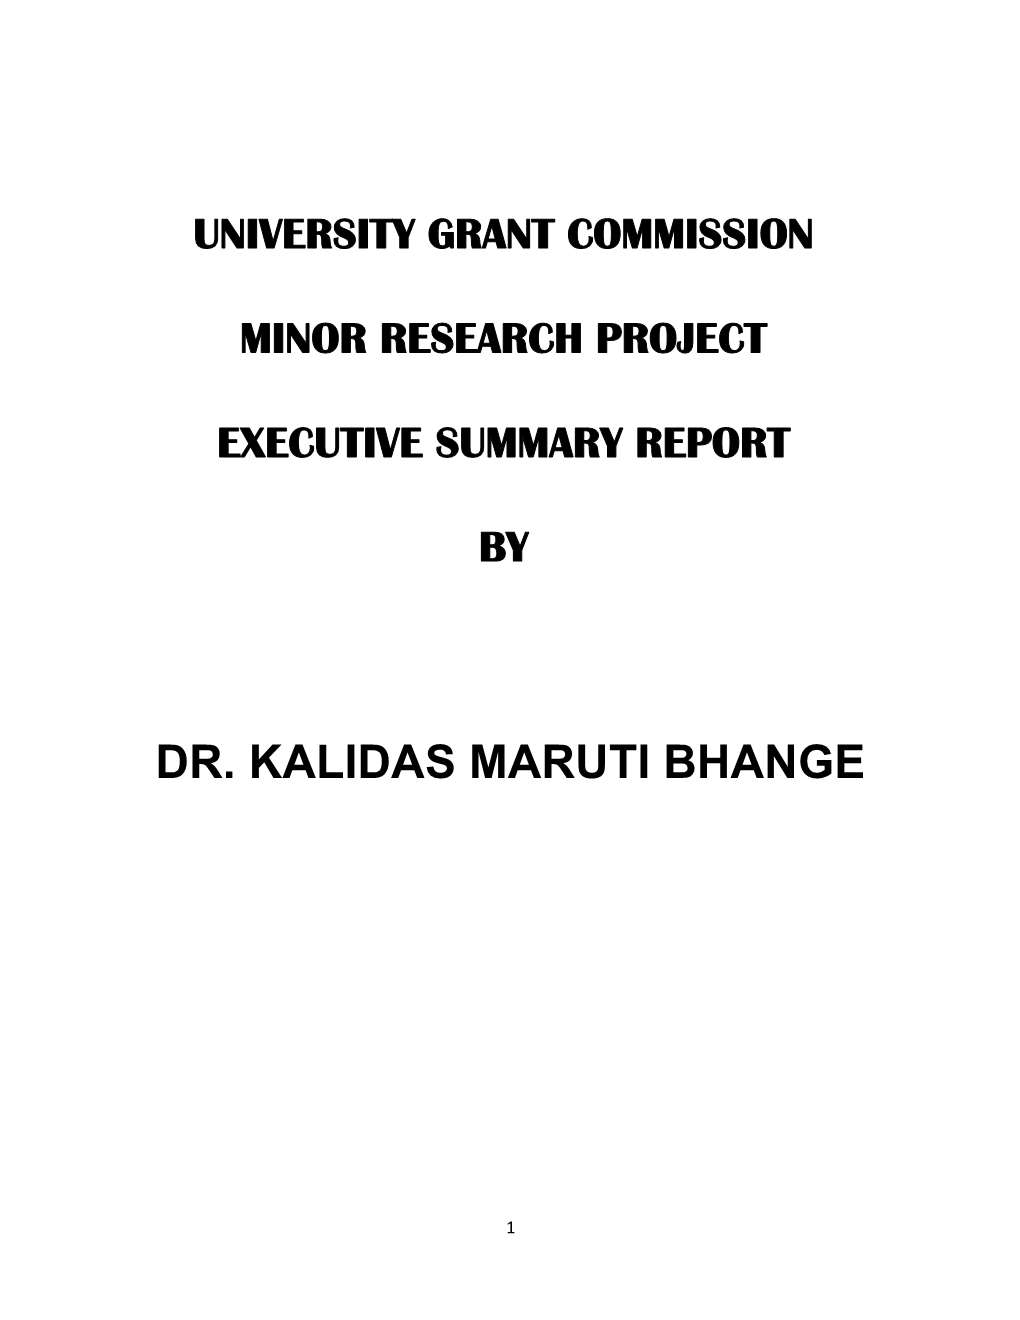 Dr. Kalidas Maruti Bhange